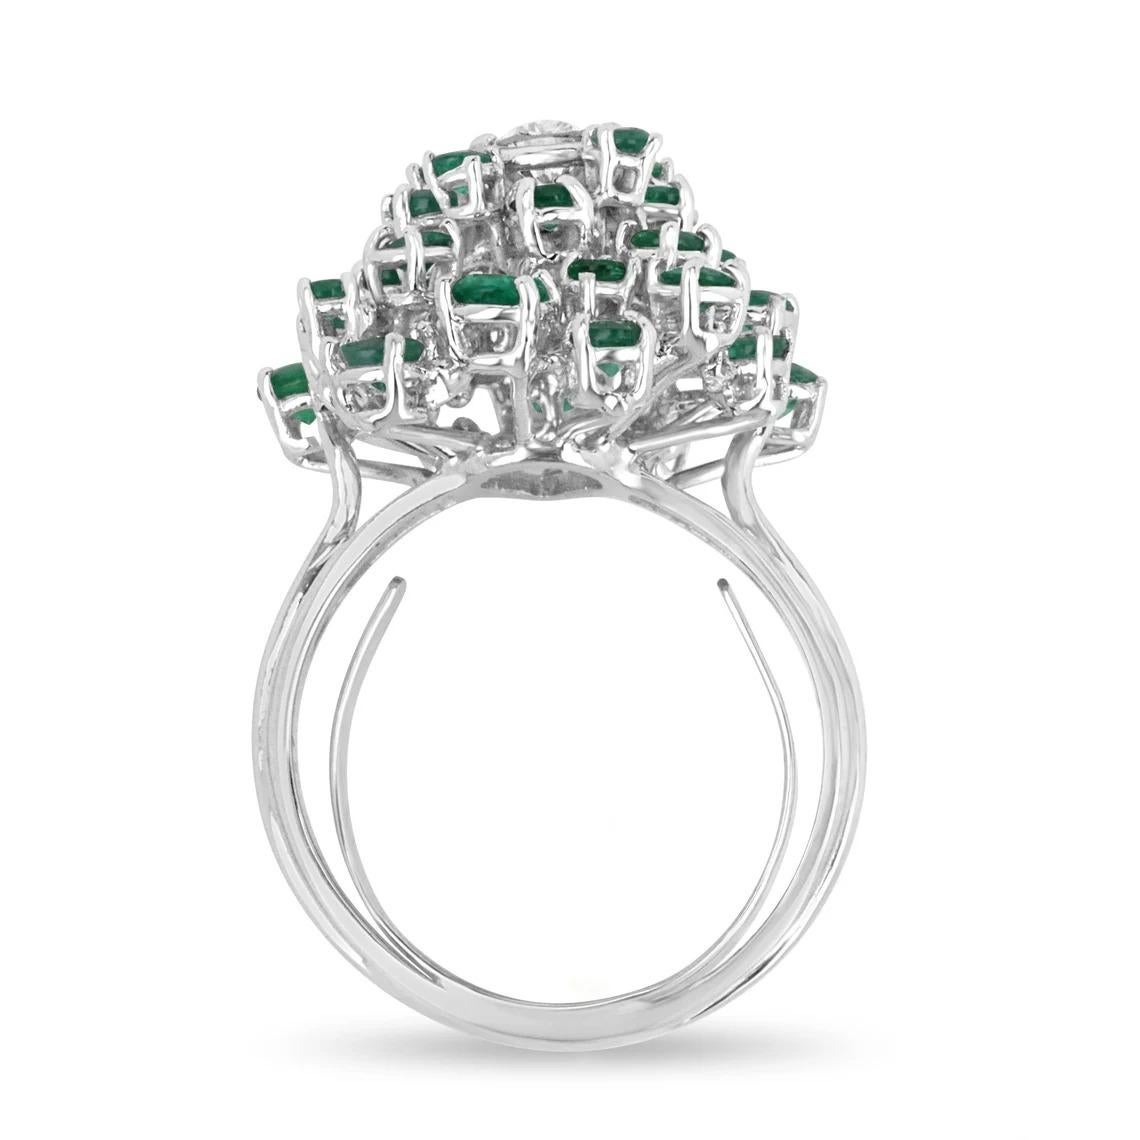 Ein Diamant im Birnenschliff und ein kolumbianischer Smaragd in einem 14-karätigen weißen Ring. Ein Diamant der Qualität VVS1 ist inmitten eines Smaragdmeers gefasst. Dieser Ring, der den ganzen Finger bedeckt, zeigt exquisite Edelsteine in einer